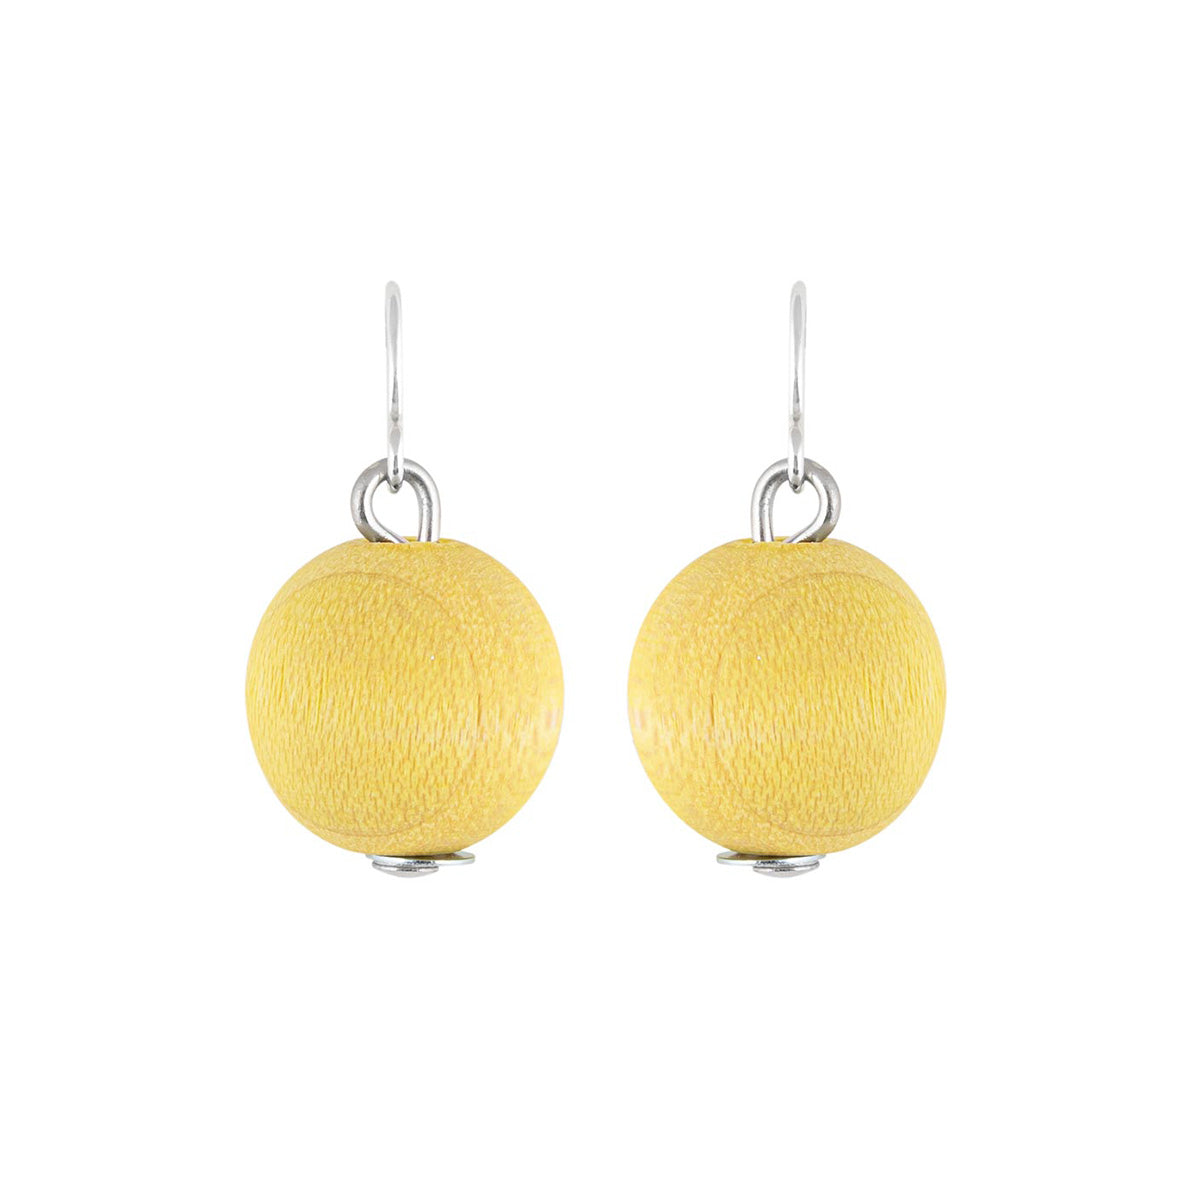 Karpalo earrings, citron yellow